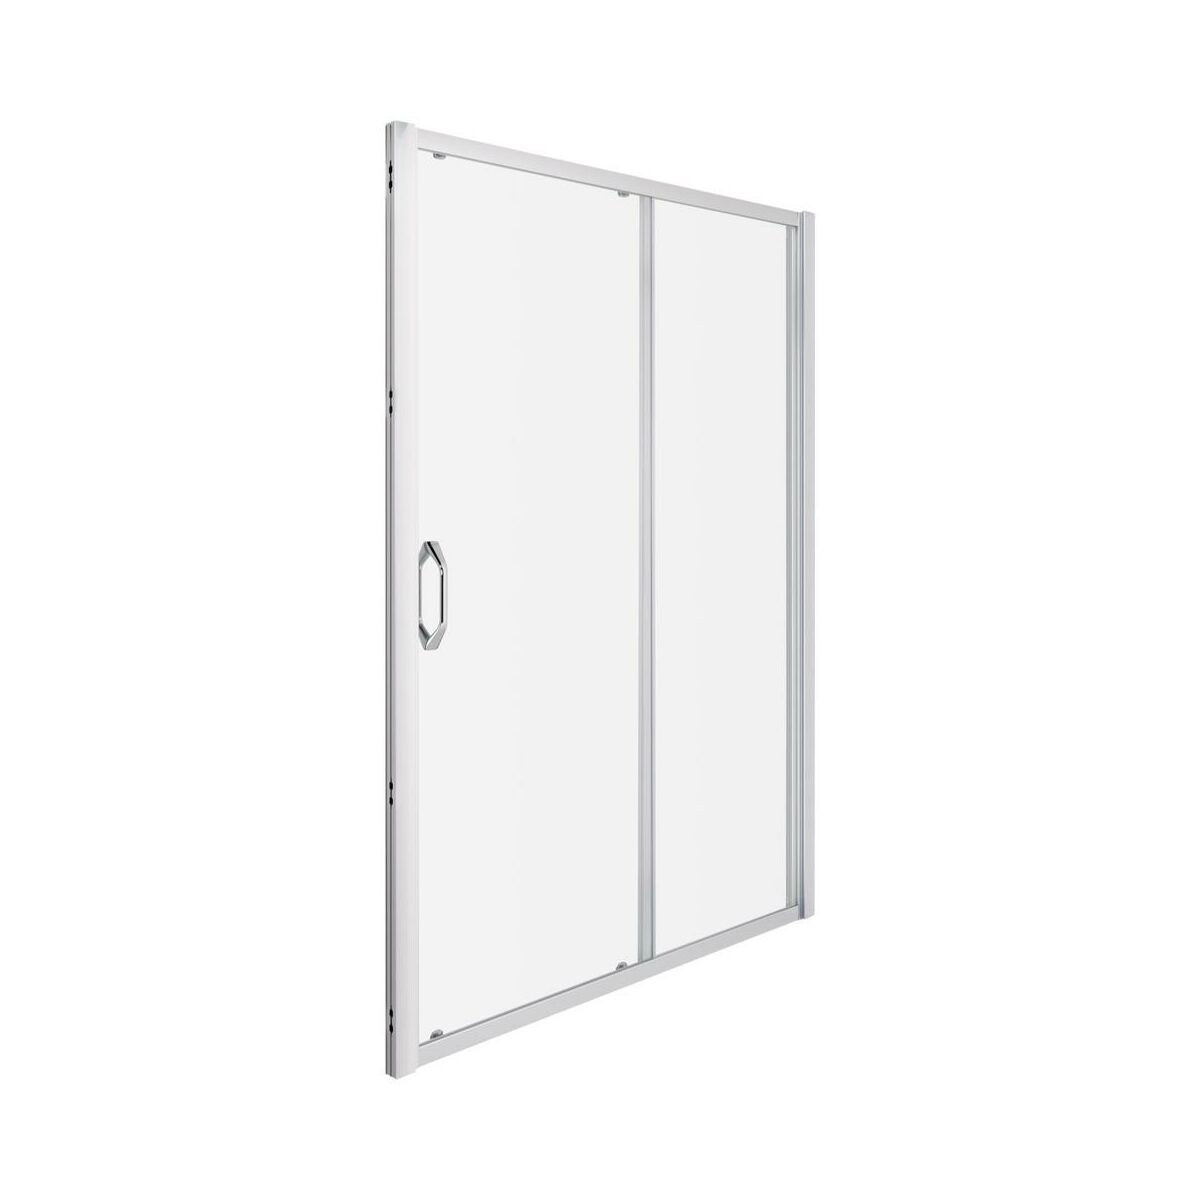 Drzwi prysznicowe X1 Flex 140 X 190 Huppe